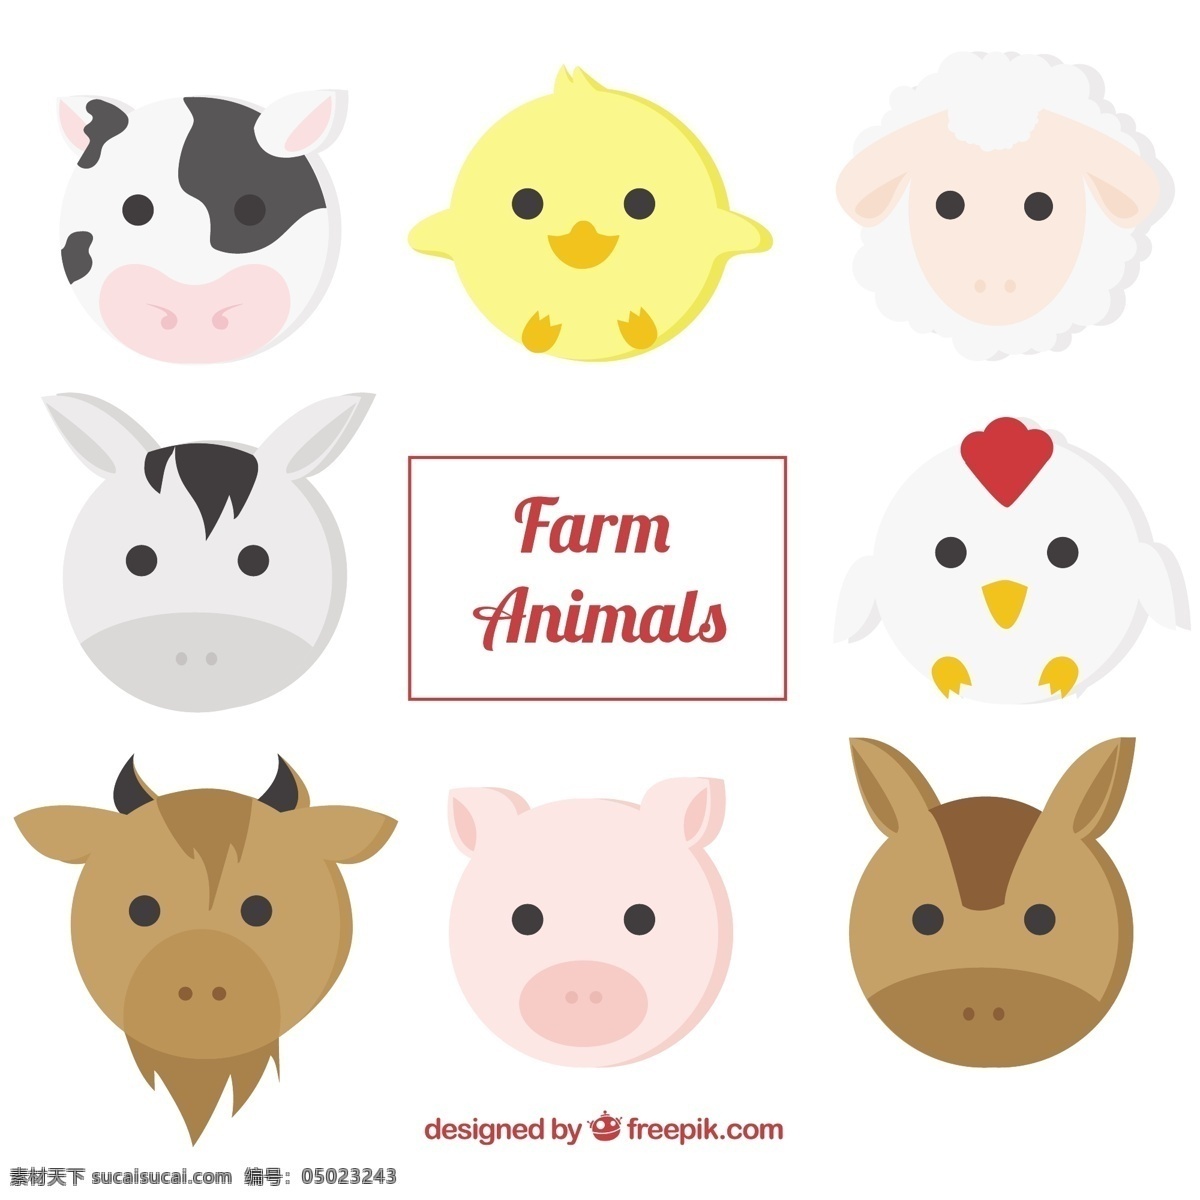 平板 中 农场 动物 手 自然 手绘 鸡 可爱 马 牛 平 画 猪 羊 可爱的动物 农场动物 绘画 包装 母鸡